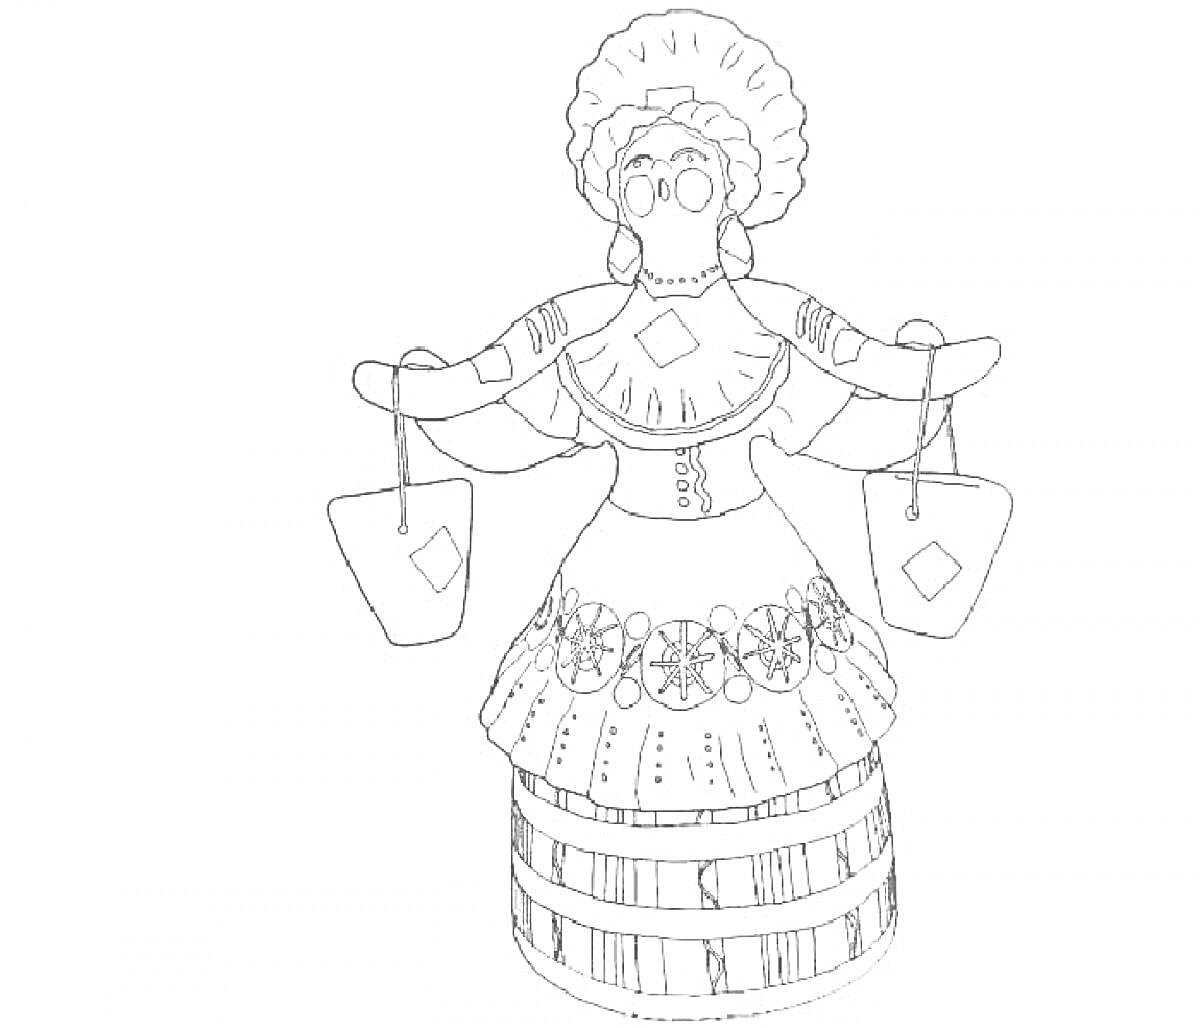 Женщина в традиционном наряде с ведрами на коромысле, головной убор с оборками, юбка с узорами